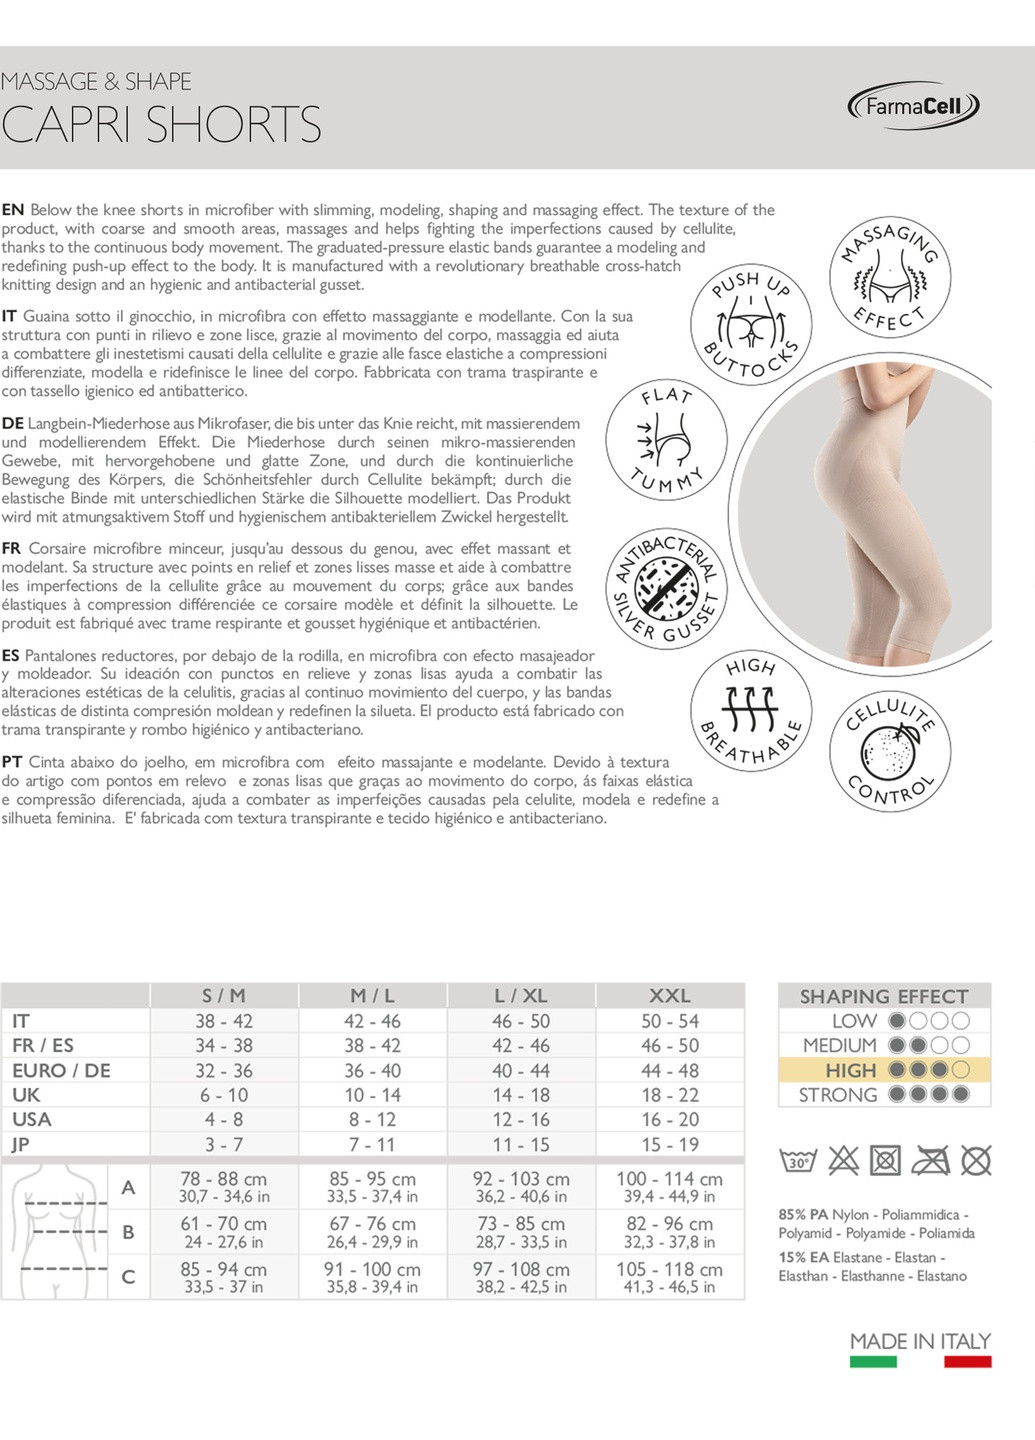 Микромассажные антицеллюлитные бриджи Relaxsan farmacell massage&shape (257743427)